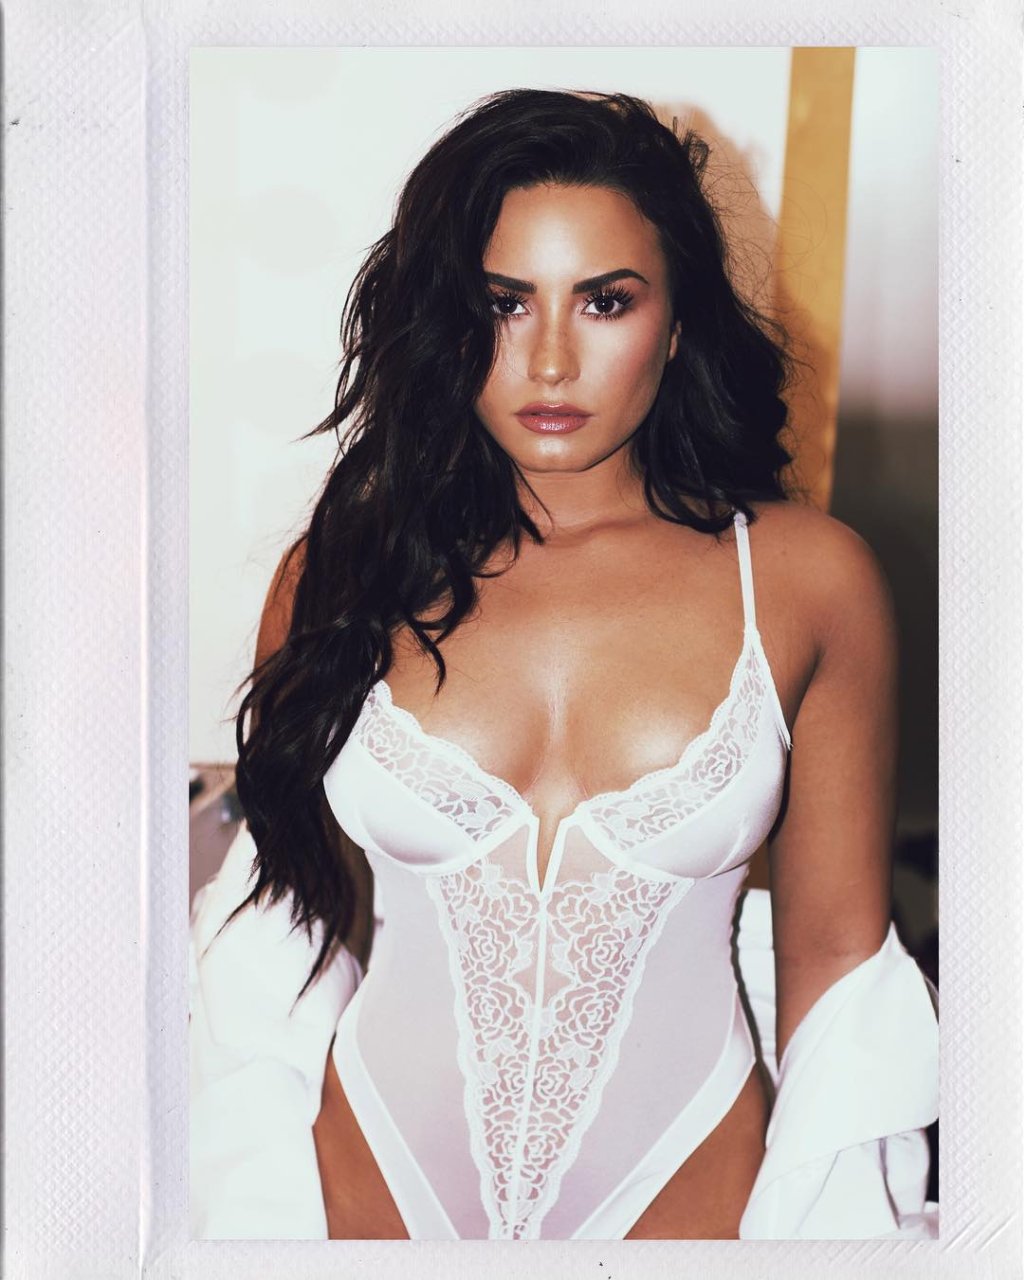 Black Lesbian Porn Demi Lovato - Demi Lovato Nude Photos and Videos | #TheFappening